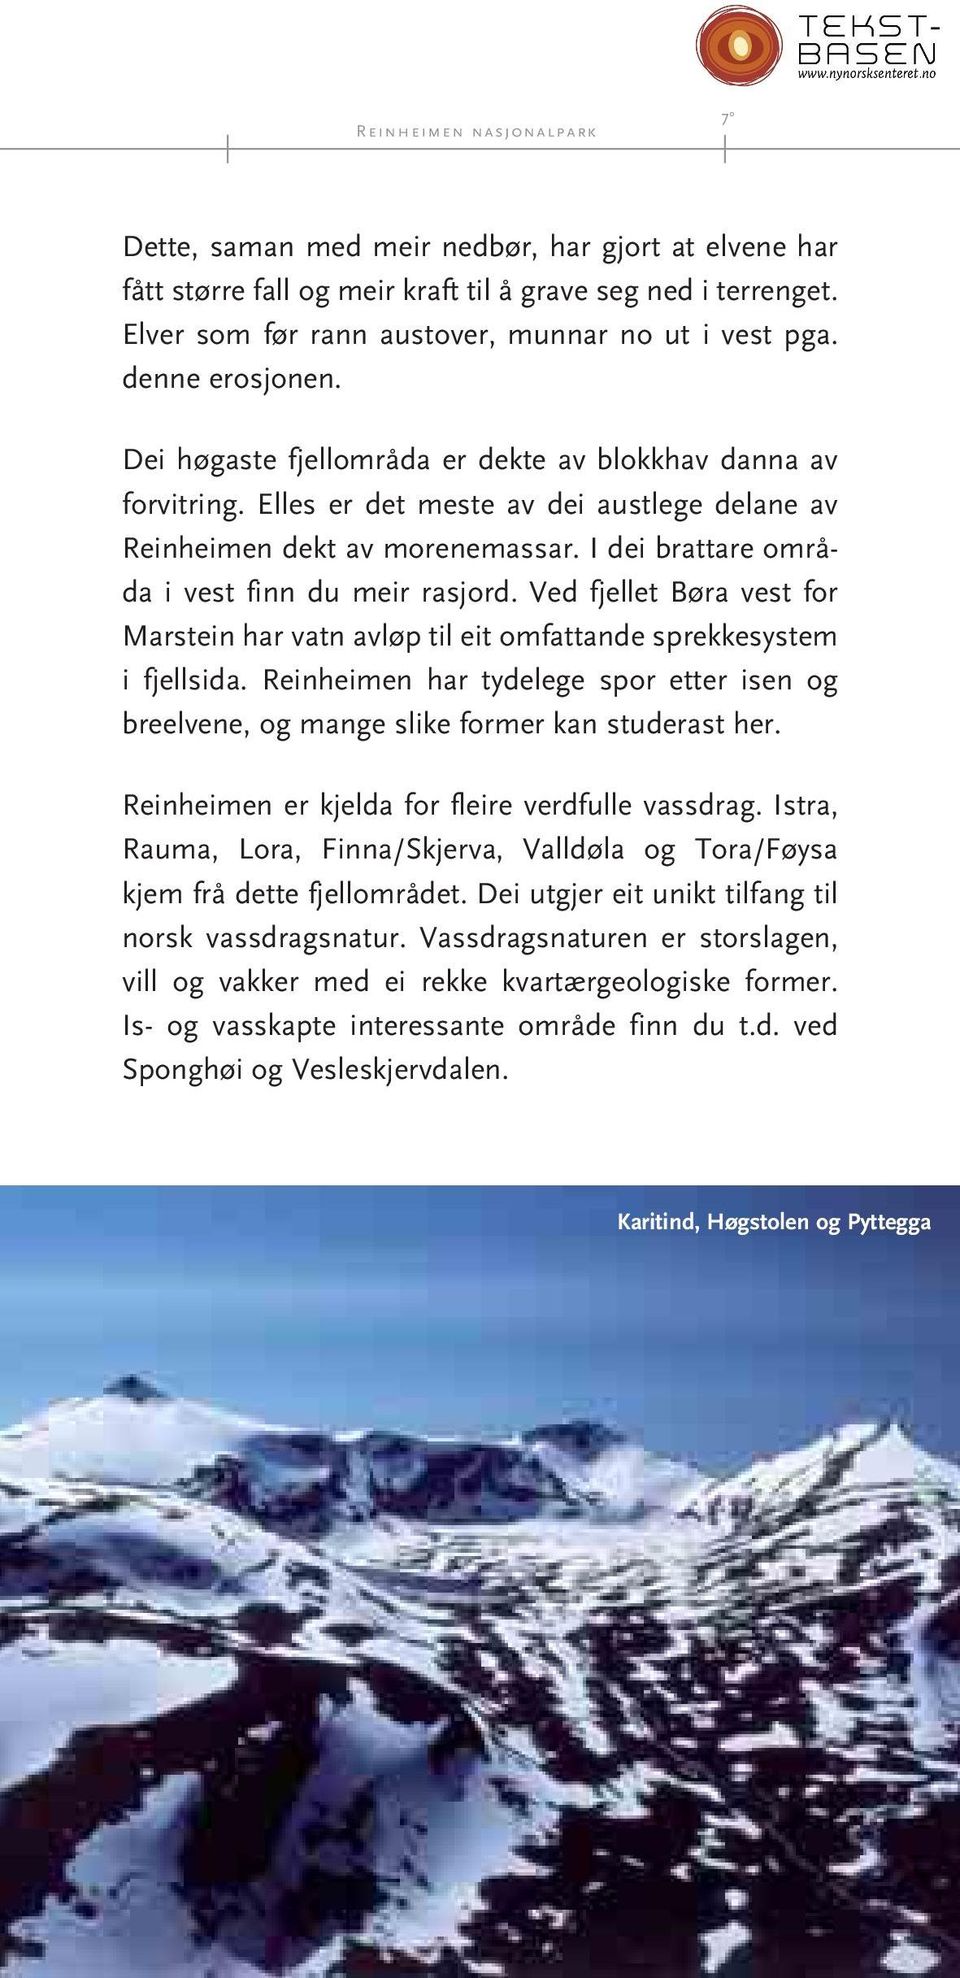 Ved fjellet Børa vest for Marstei har vat avløp til eit omfattade sprekke system i fjellsida. Reiheime har tydelege spor etter ise og breelvee, og mage slike former ka studerast her.